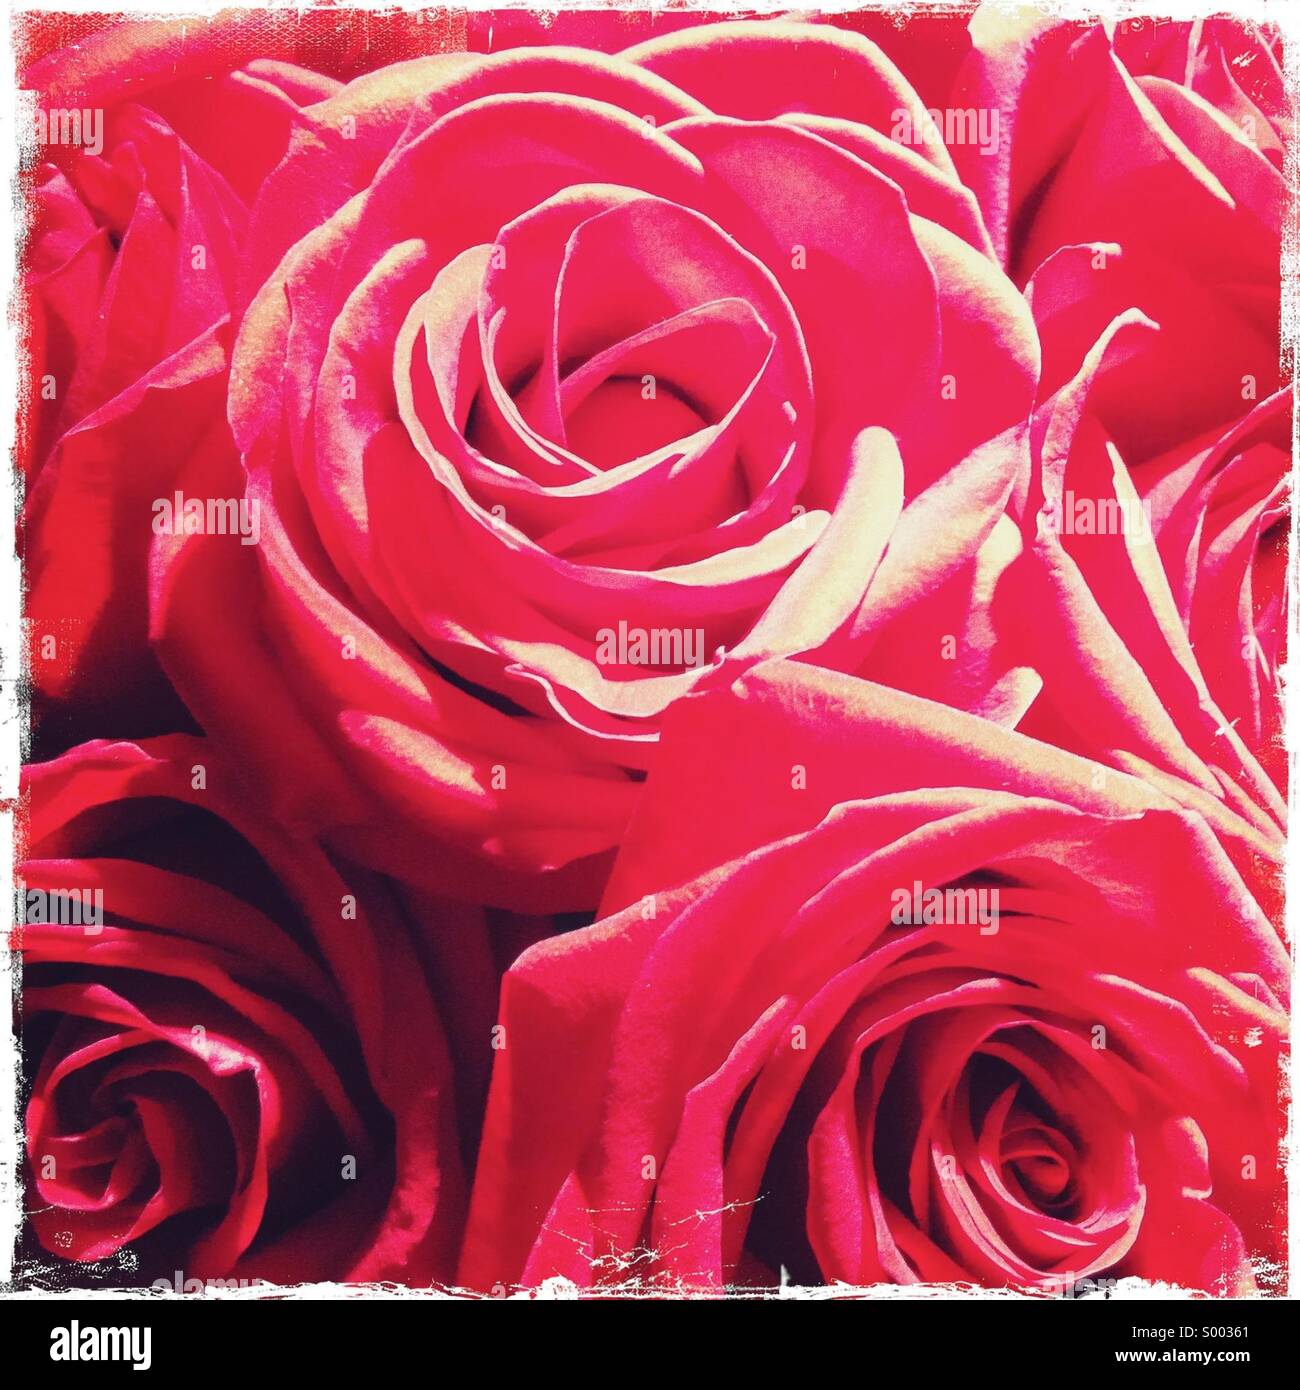 Vue rapprochée de nombreuses fleurs roses rouges Banque D'Images